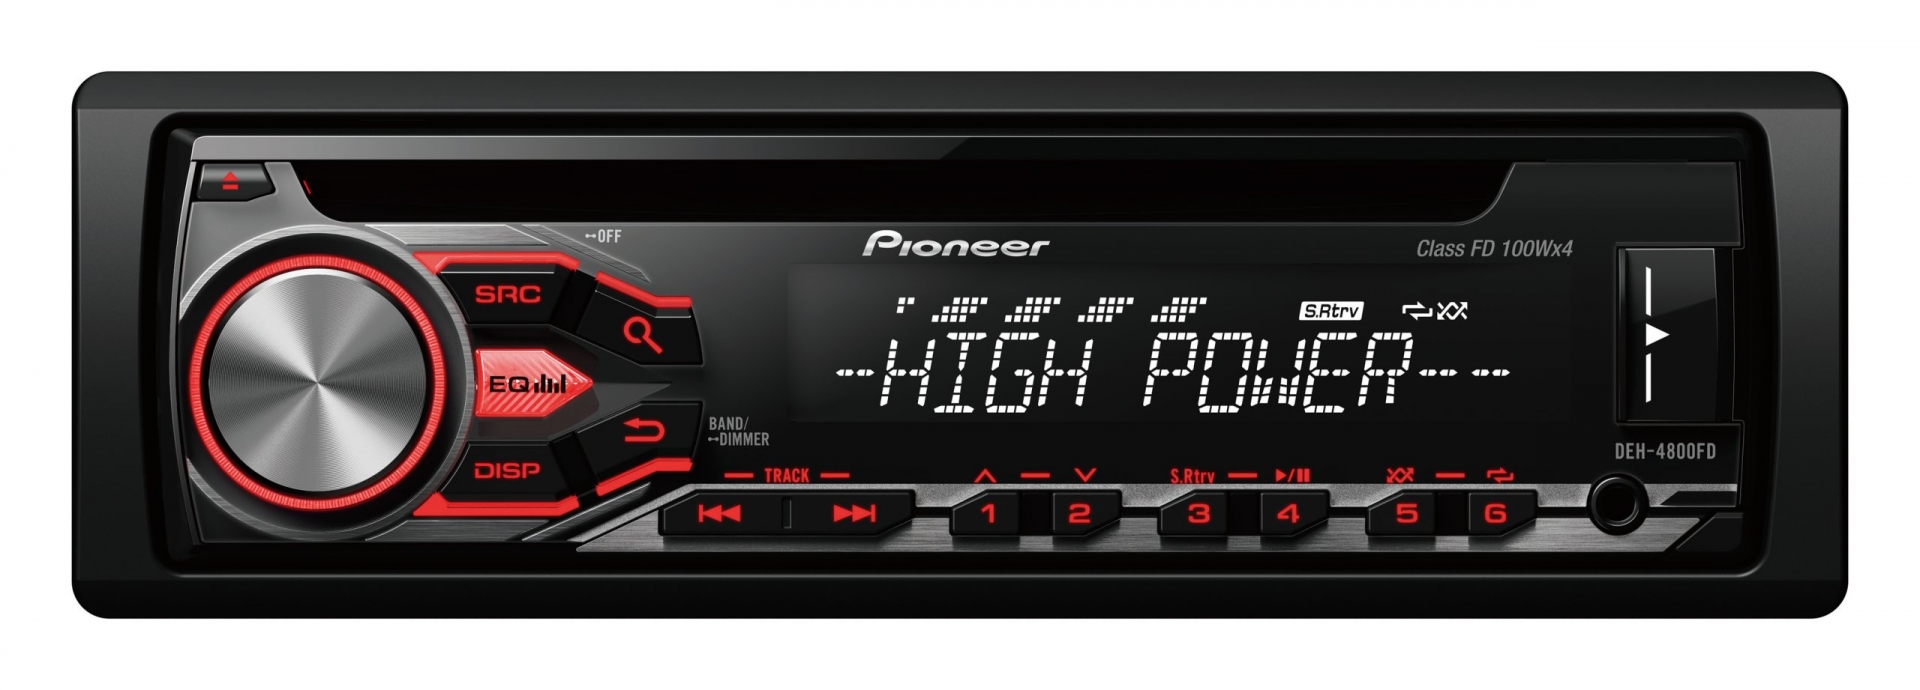 Pioneer Pioneer DEH-4800FD